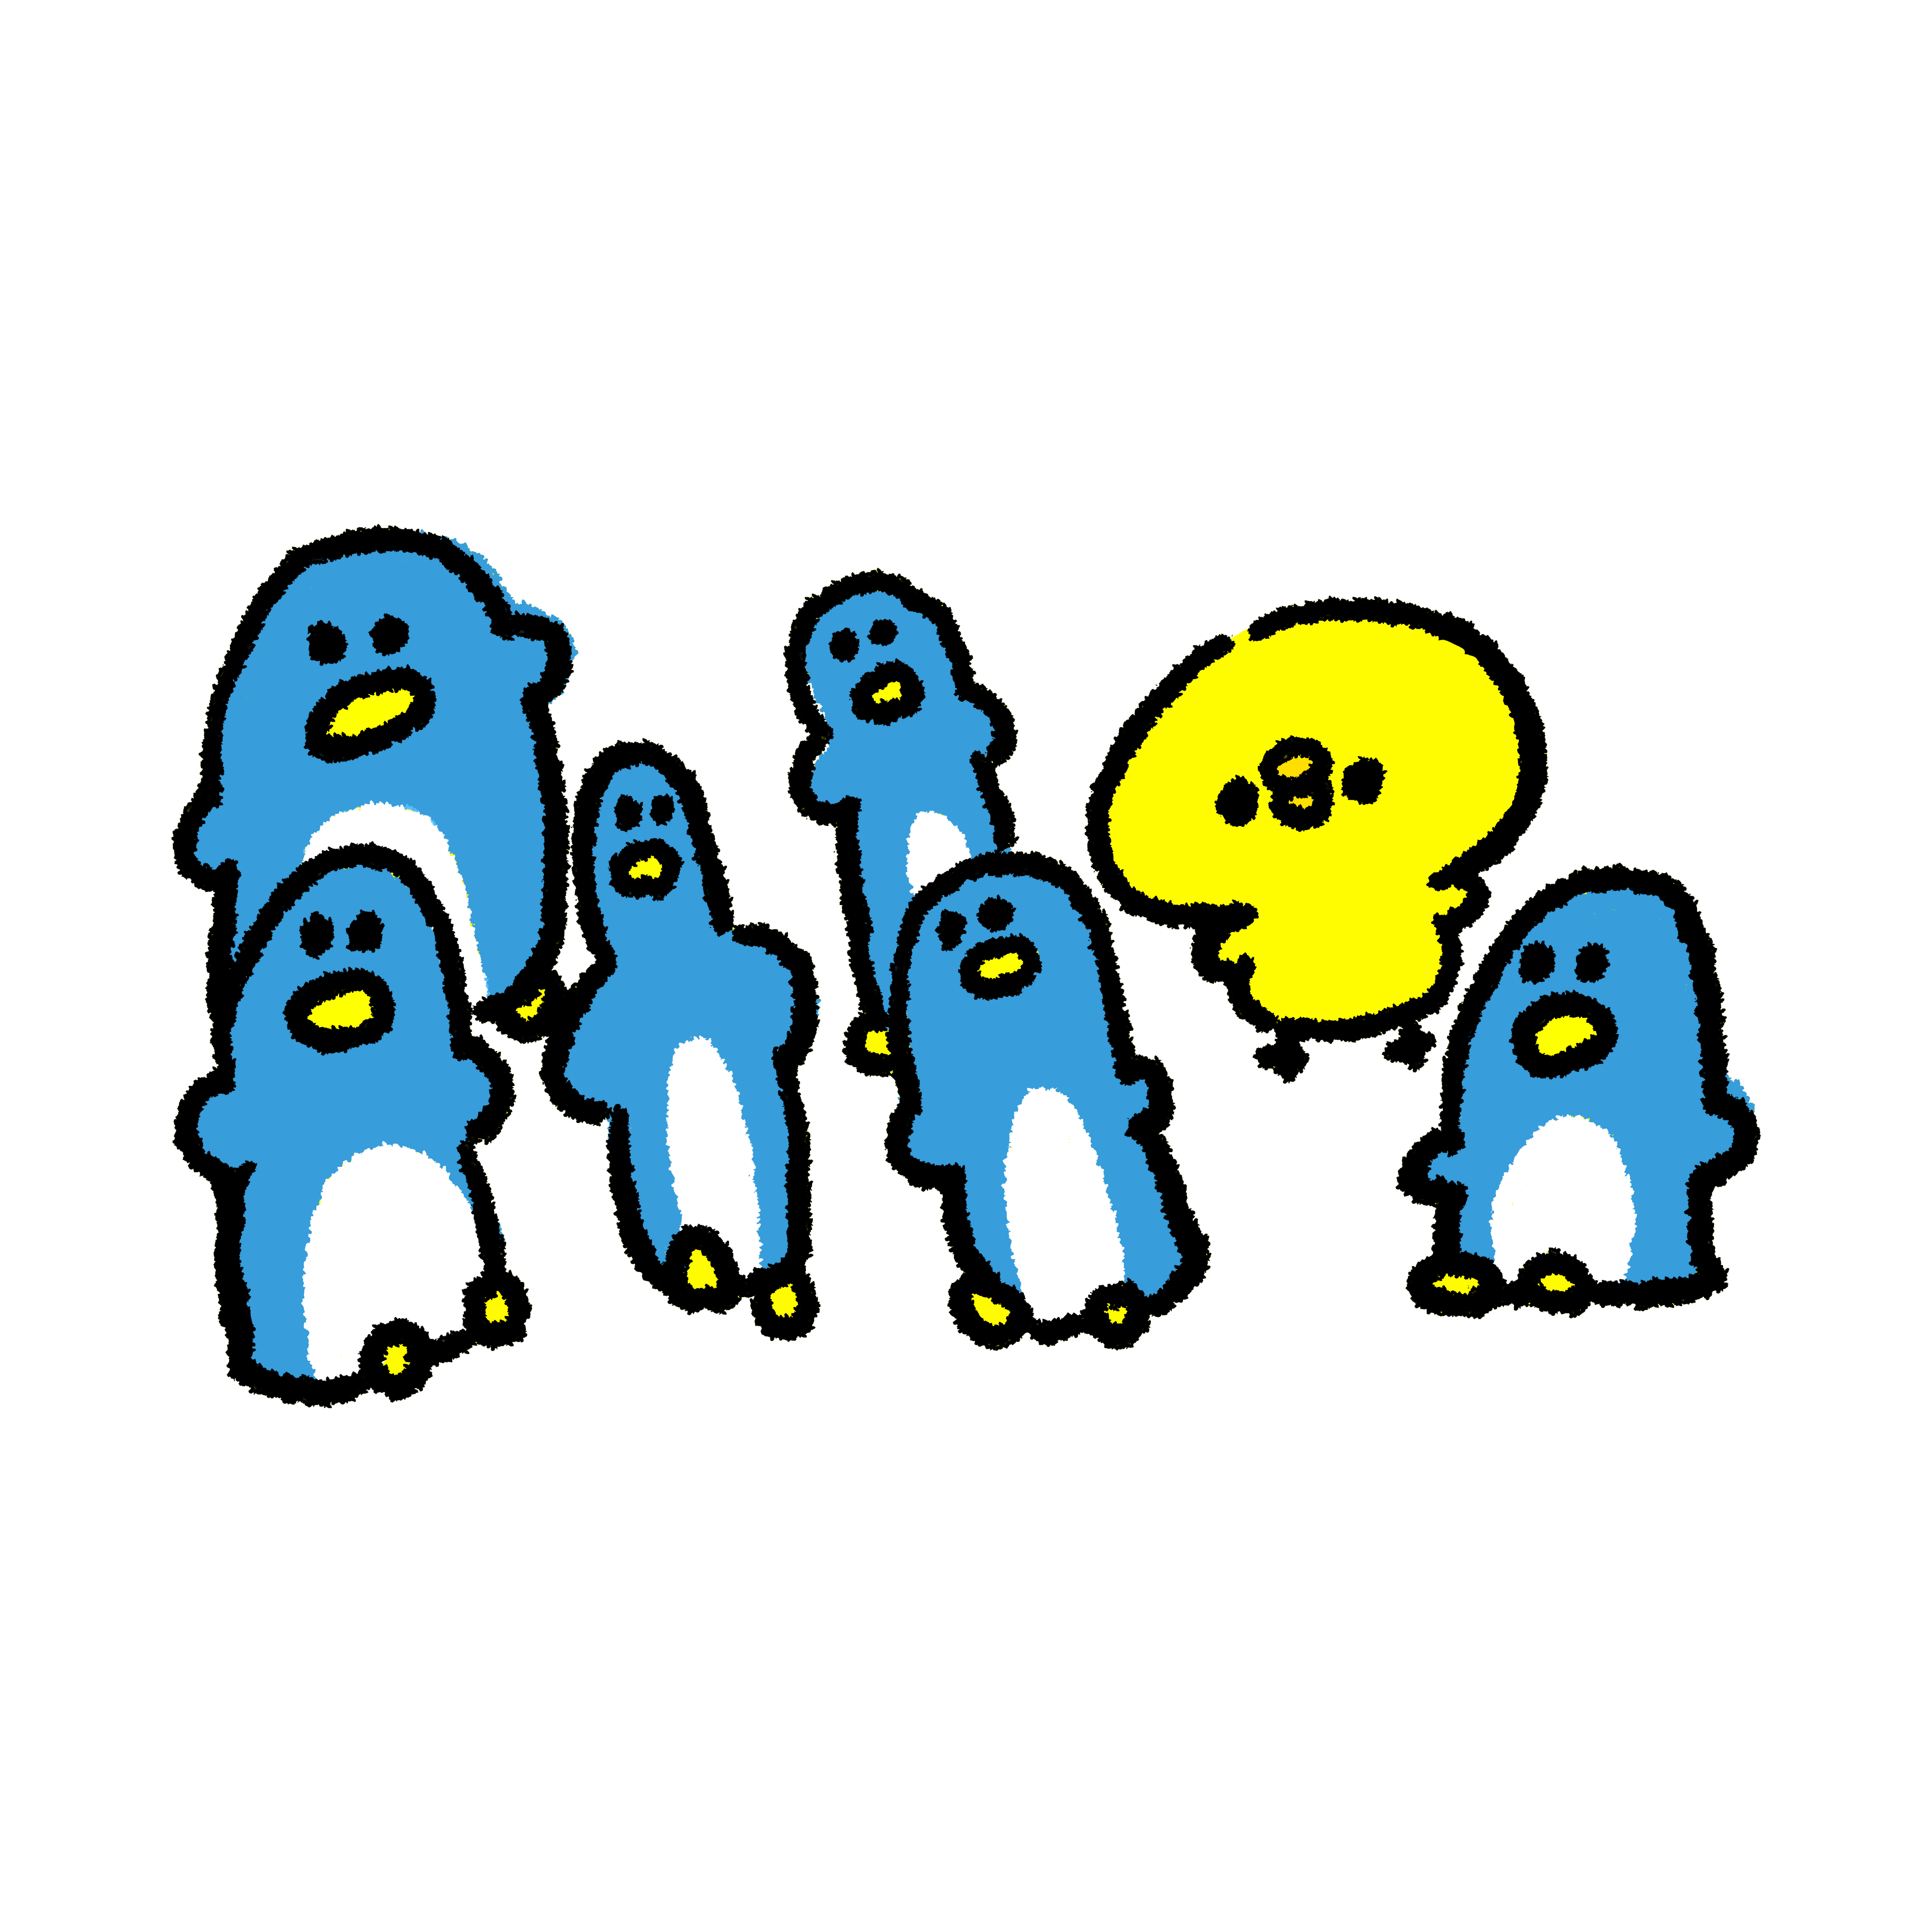 ペンギンがいっぱいの中にひよこ一羽